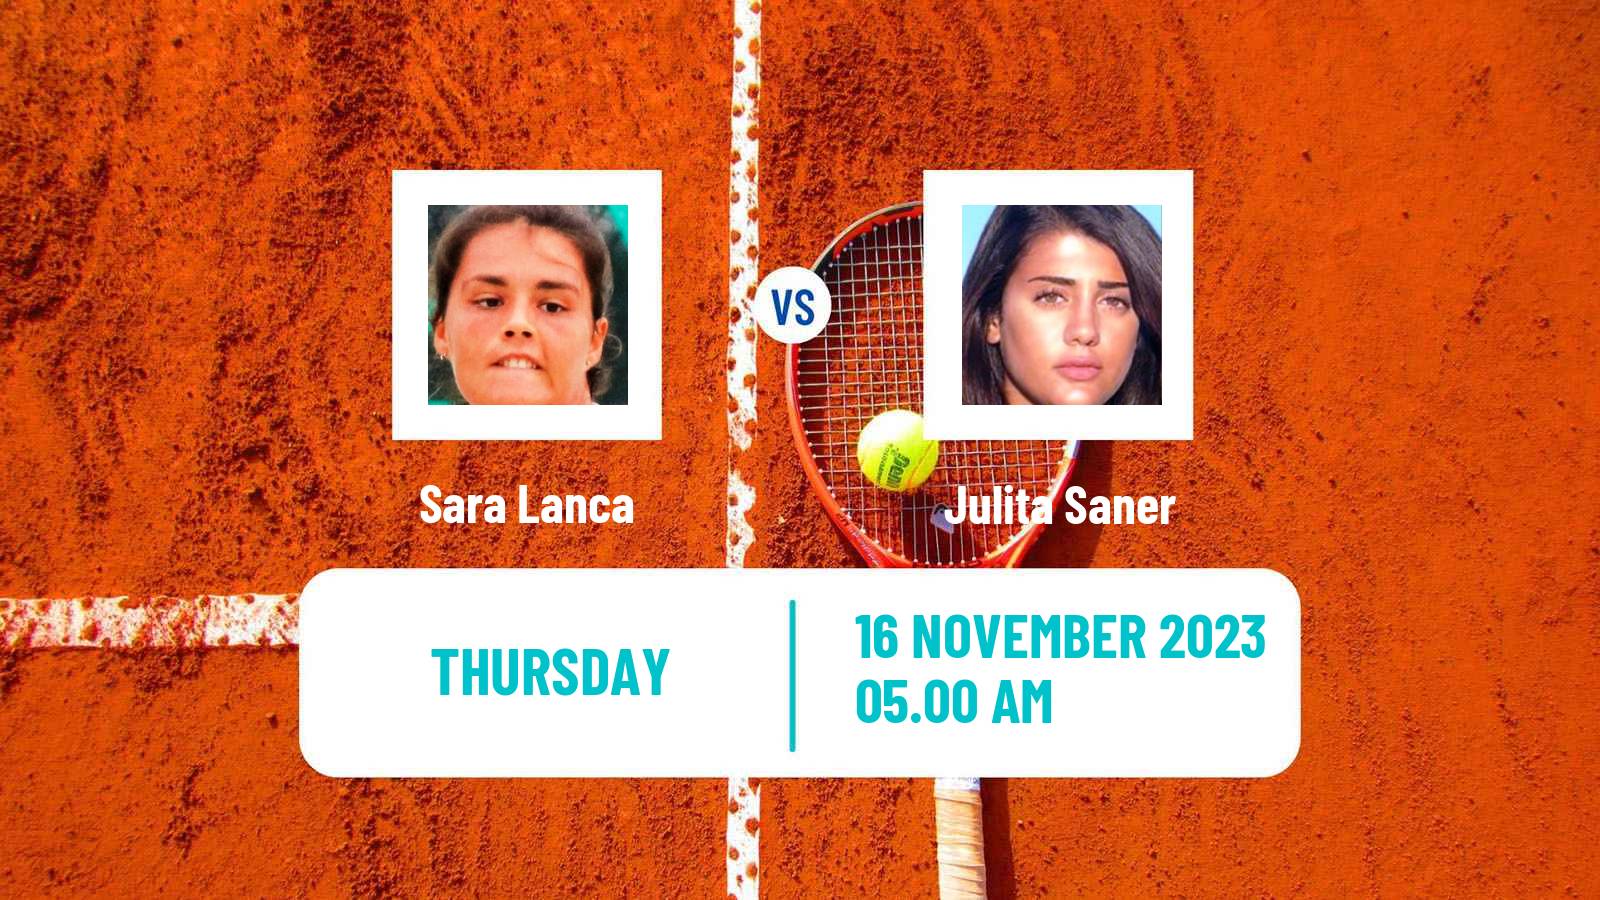 Tennis ITF W15 Monastir 40 Women Sara Lanca - Julita Saner